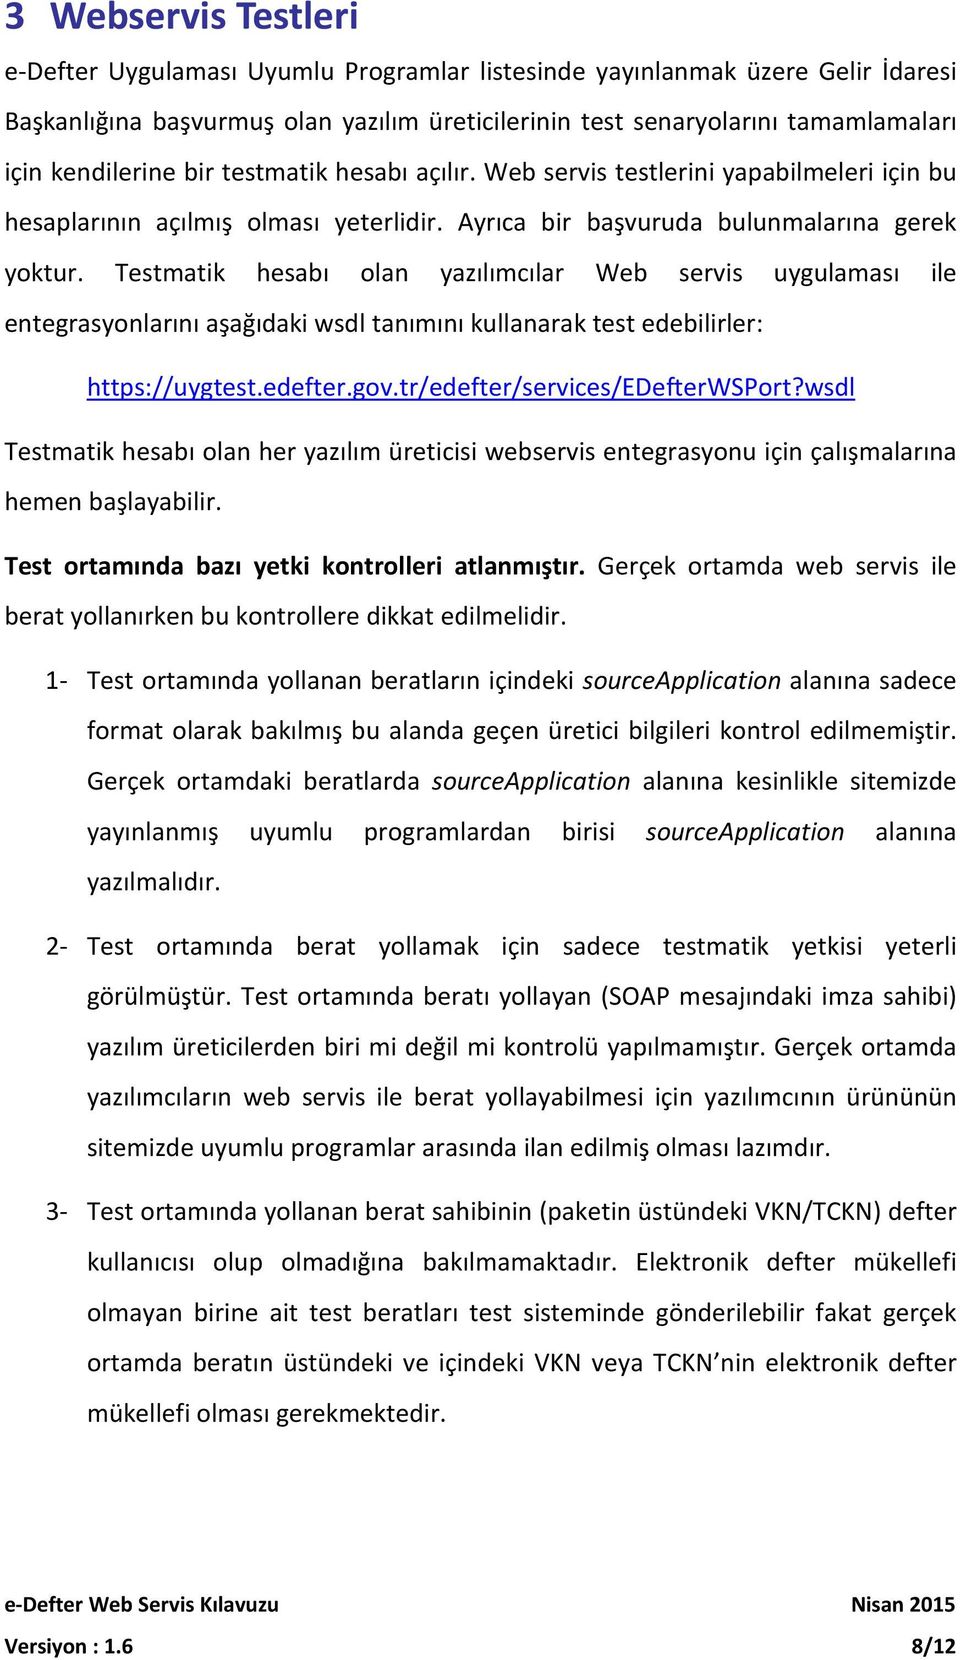 Testmatik hesabı olan yazılımcılar Web servis uygulaması ile entegrasyonlarını aşağıdaki wsdl tanımını kullanarak test edebilirler: https://uygtest.edefter.gov.tr/edefter/services/edefterwsport?